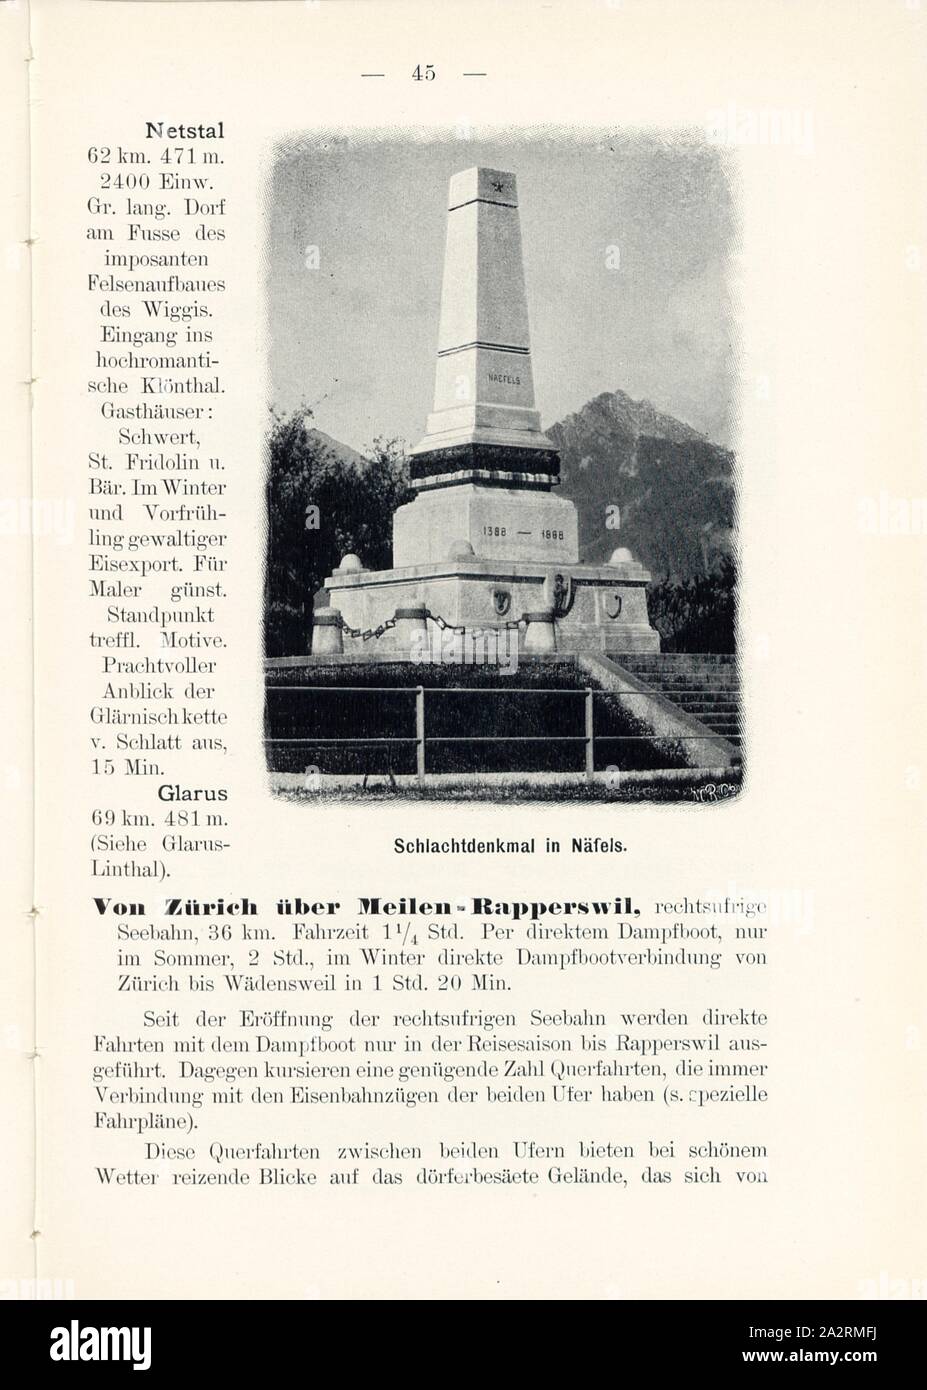 Battle memorial in Näfels, Monument to the Battle of Näfels 1388 in the Canton of Glarus, Signed: M.R.C, Fig. 45, p. 45, Meisenbach, Riffarth und Co. (imp.), 1900, J. Knobel: Illustrierter Reisebegleiter für die Alpenstrasse des Klausen und ihre Zufahrtslinien. Glarus: Buchdruckerei J. Spälti, 1900 Stock Photo